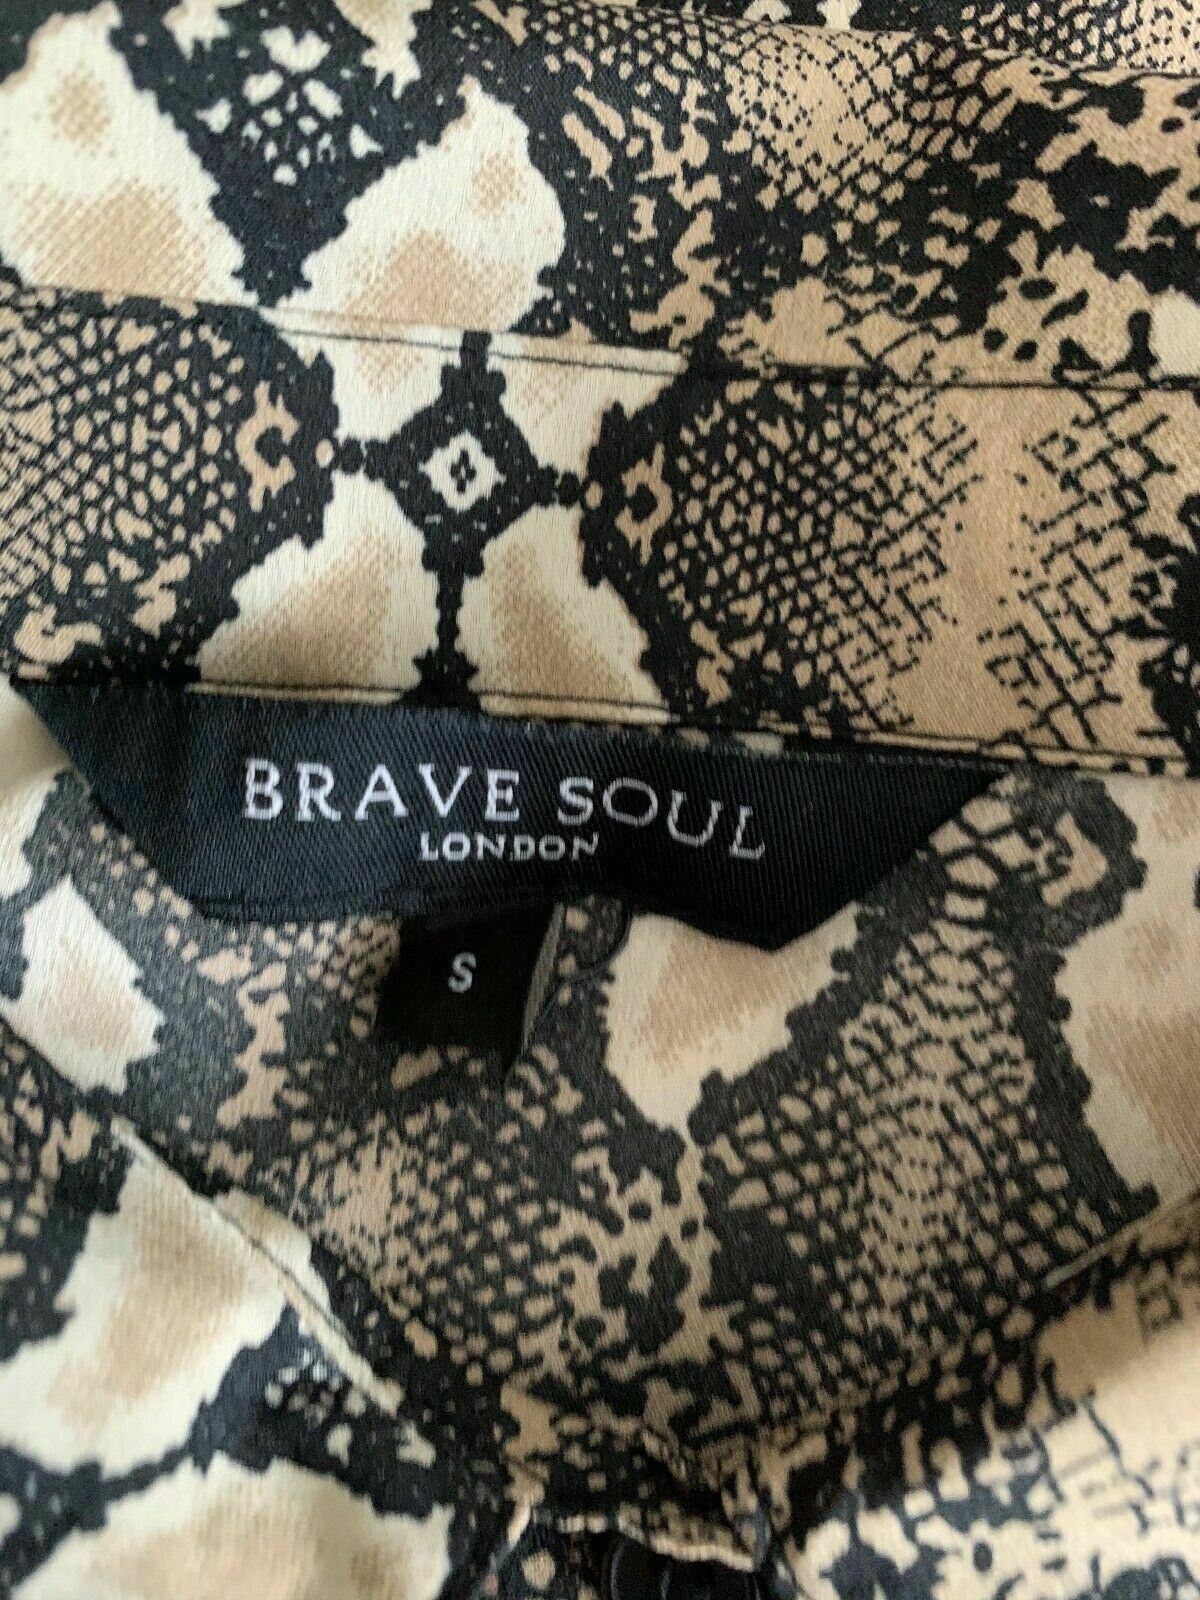 Brave Soul Snake Print Shirt Size S